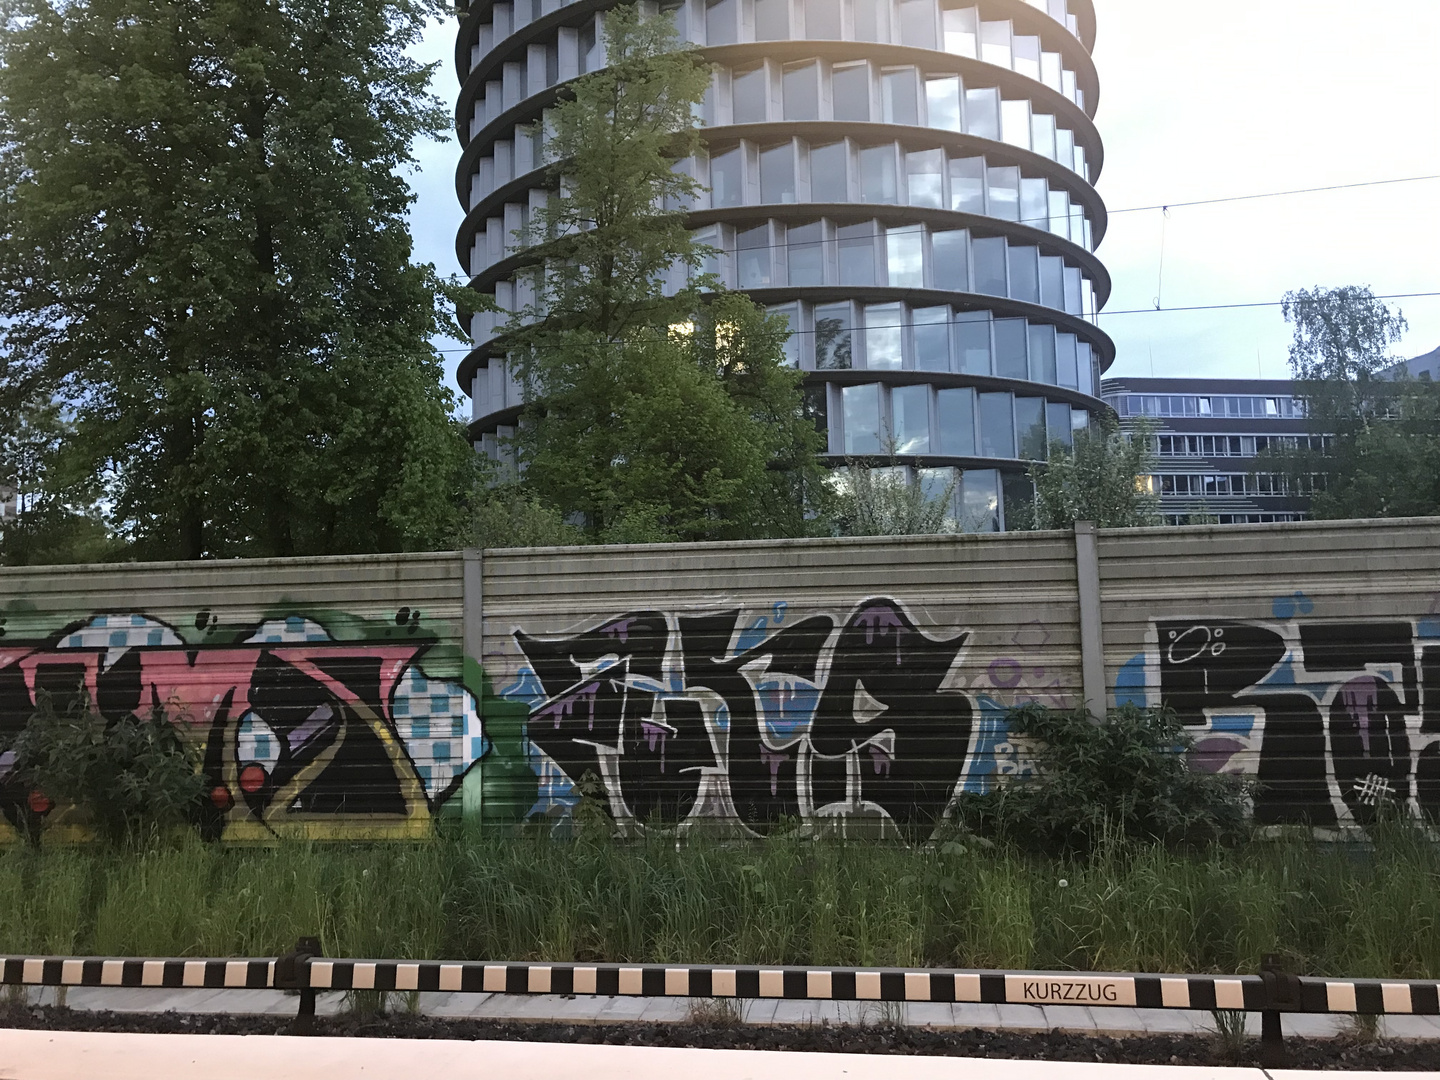 Graffitis an der U Bahn 